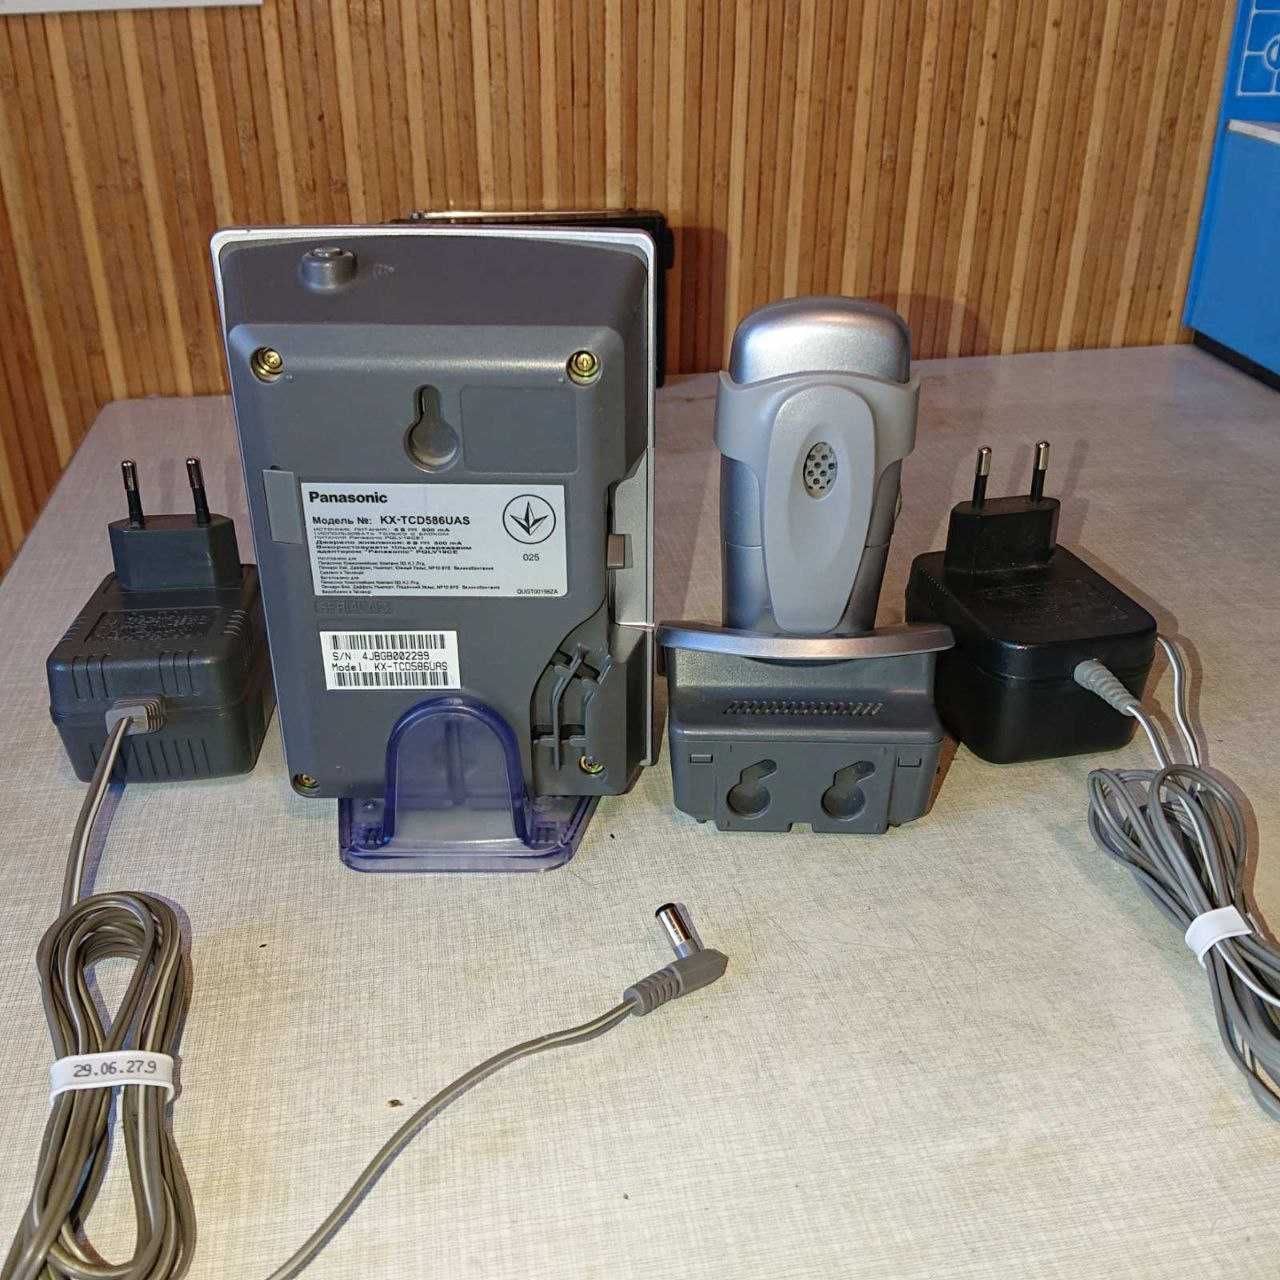 телефон з переносн трубкою і зарядними пристроями для трубки і станції